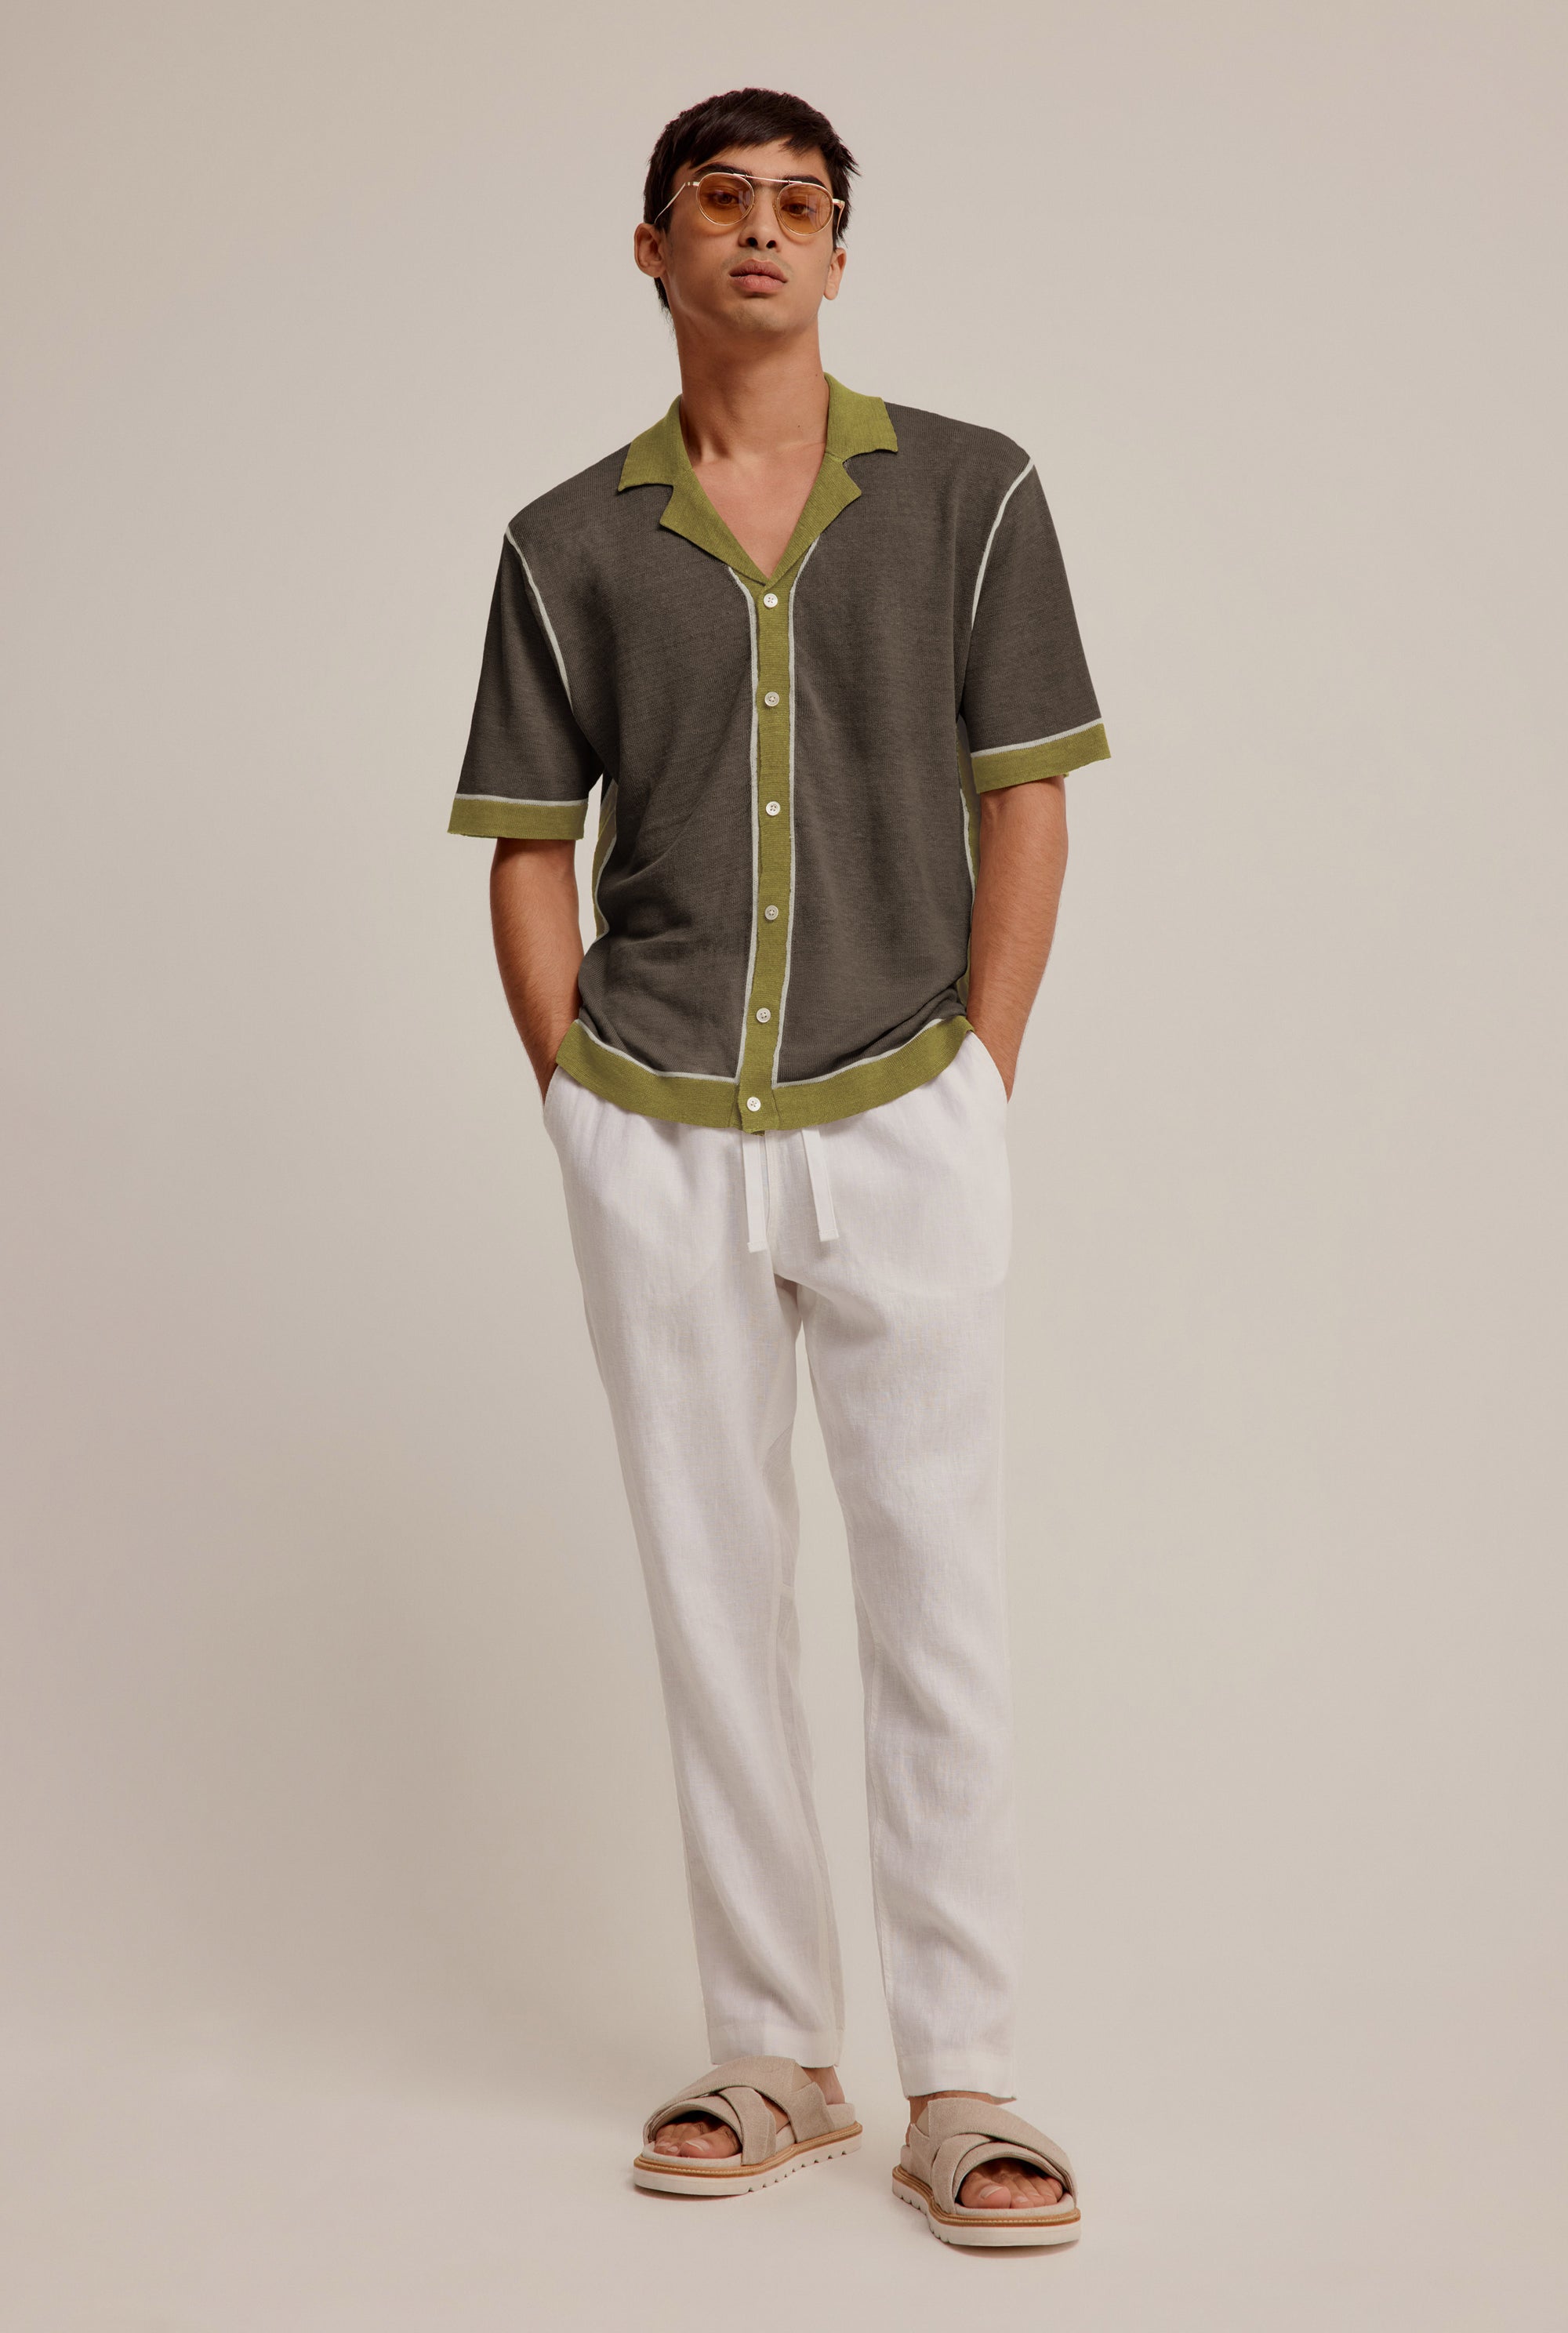 Knitted Contrast Short Sleeve Shirt - Brown/Moss Green/Cream